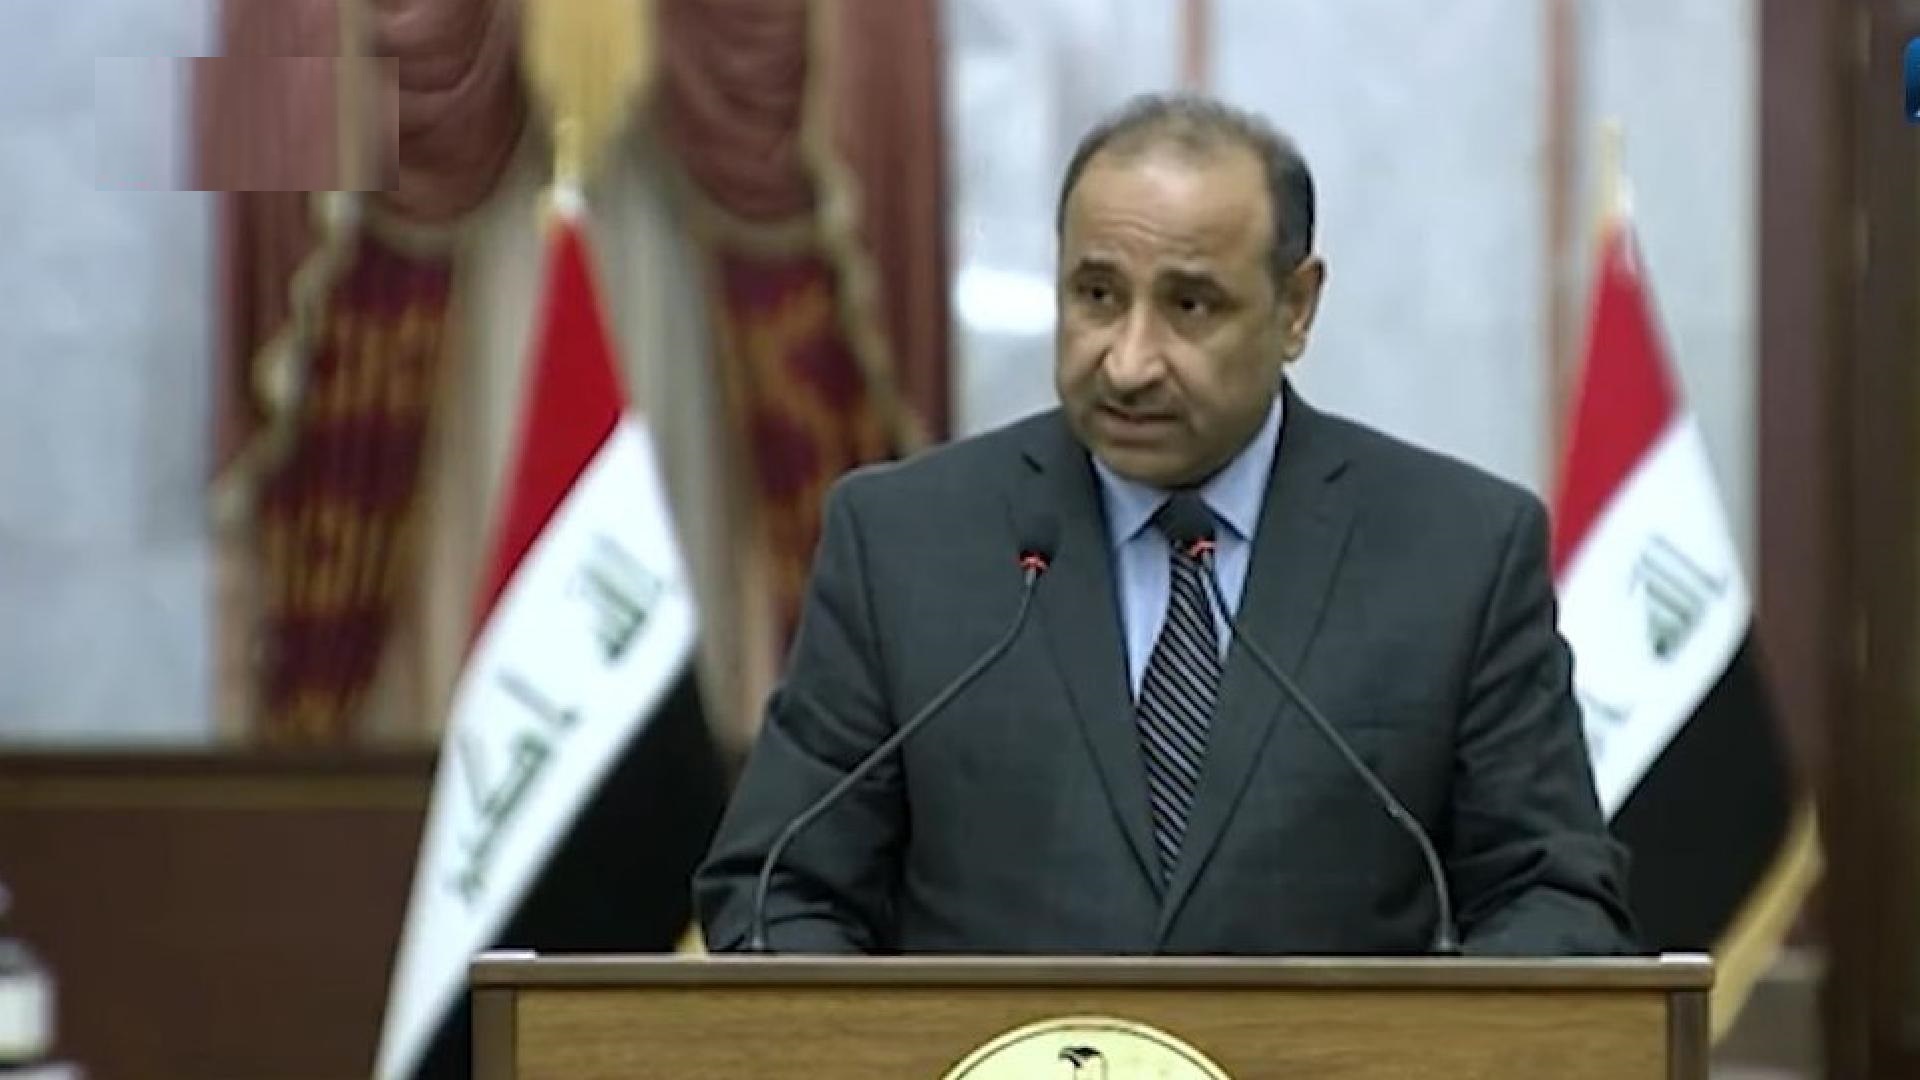 الحكومة العراقية تحسم موعد إجراء الانتخابات المبكرة